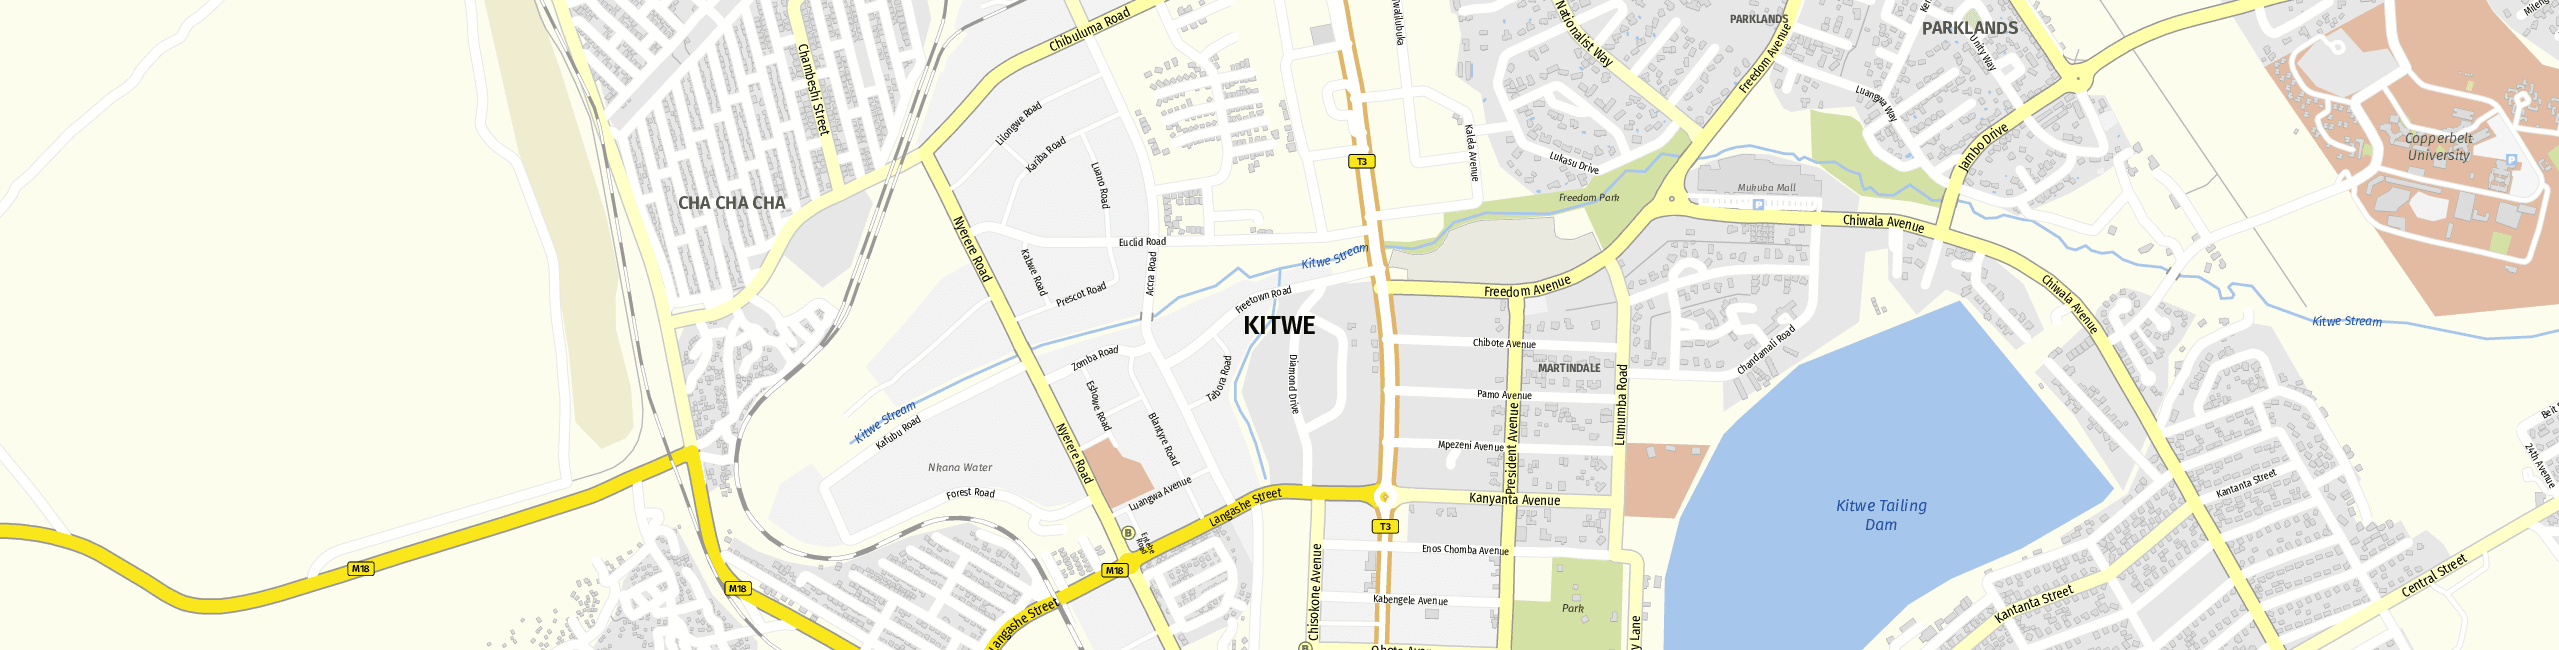 Stadtplan Kitwe zum Downloaden.